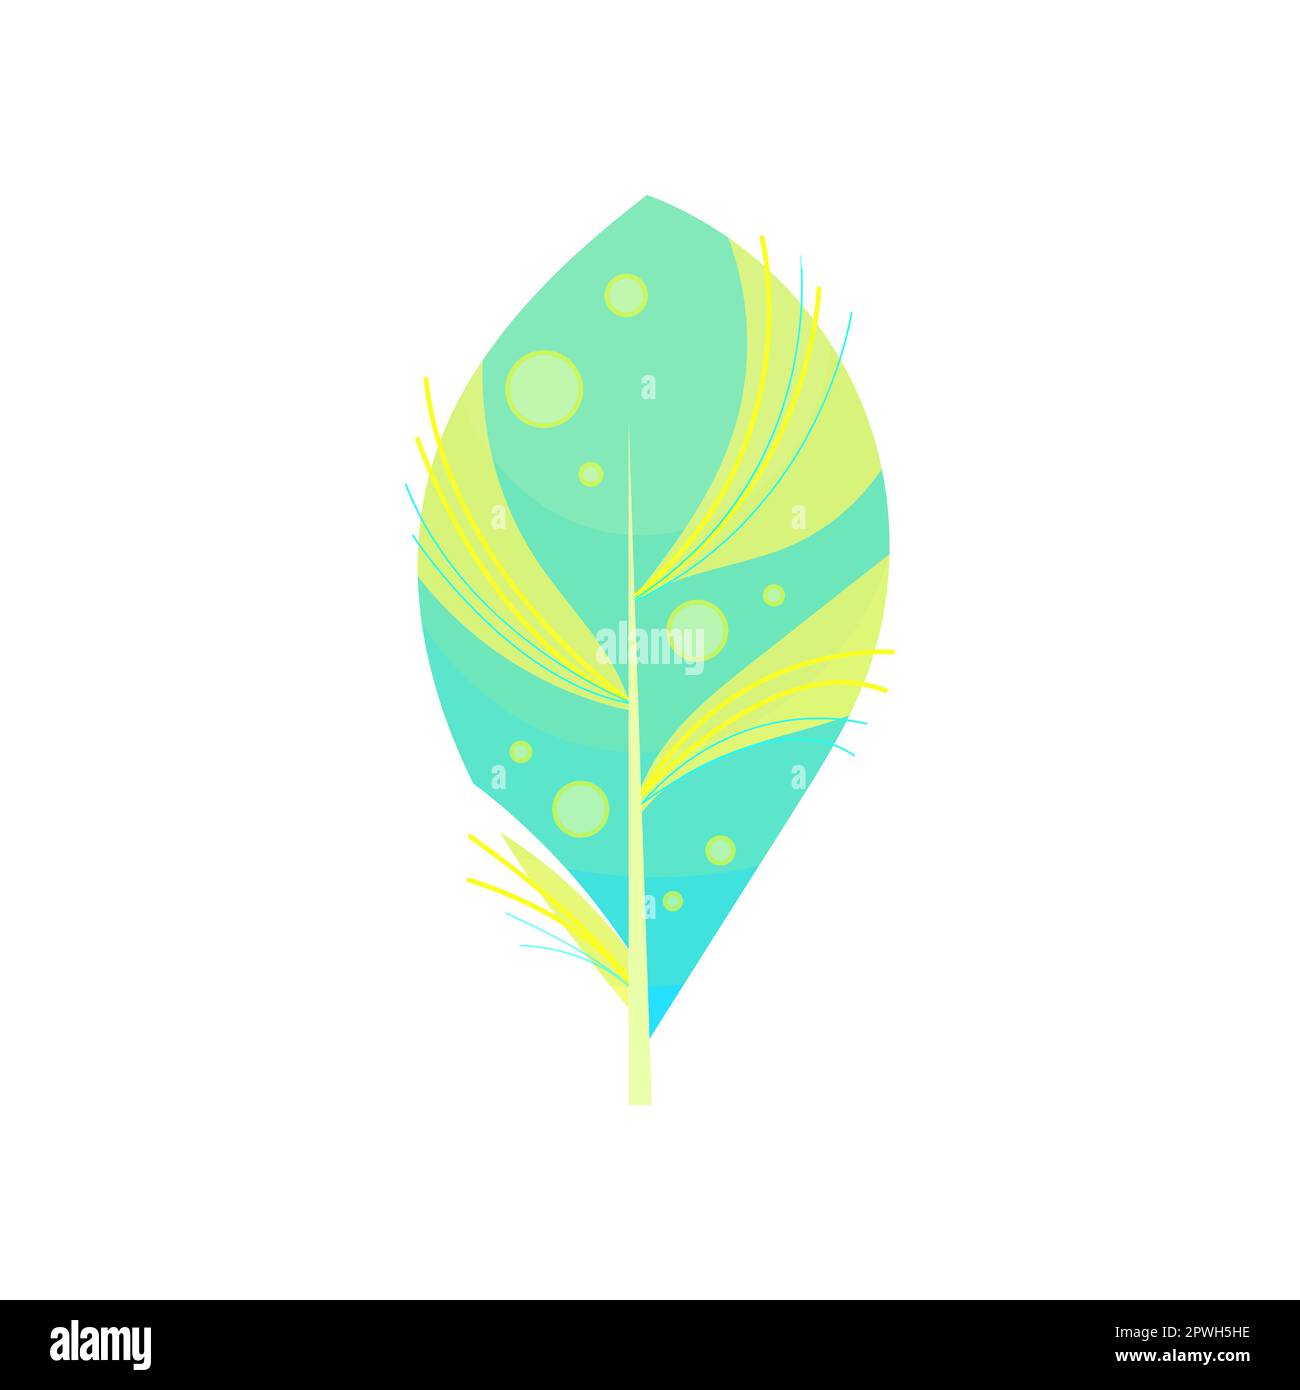 Turquoise bird feather cartoon illustration Stock Vector